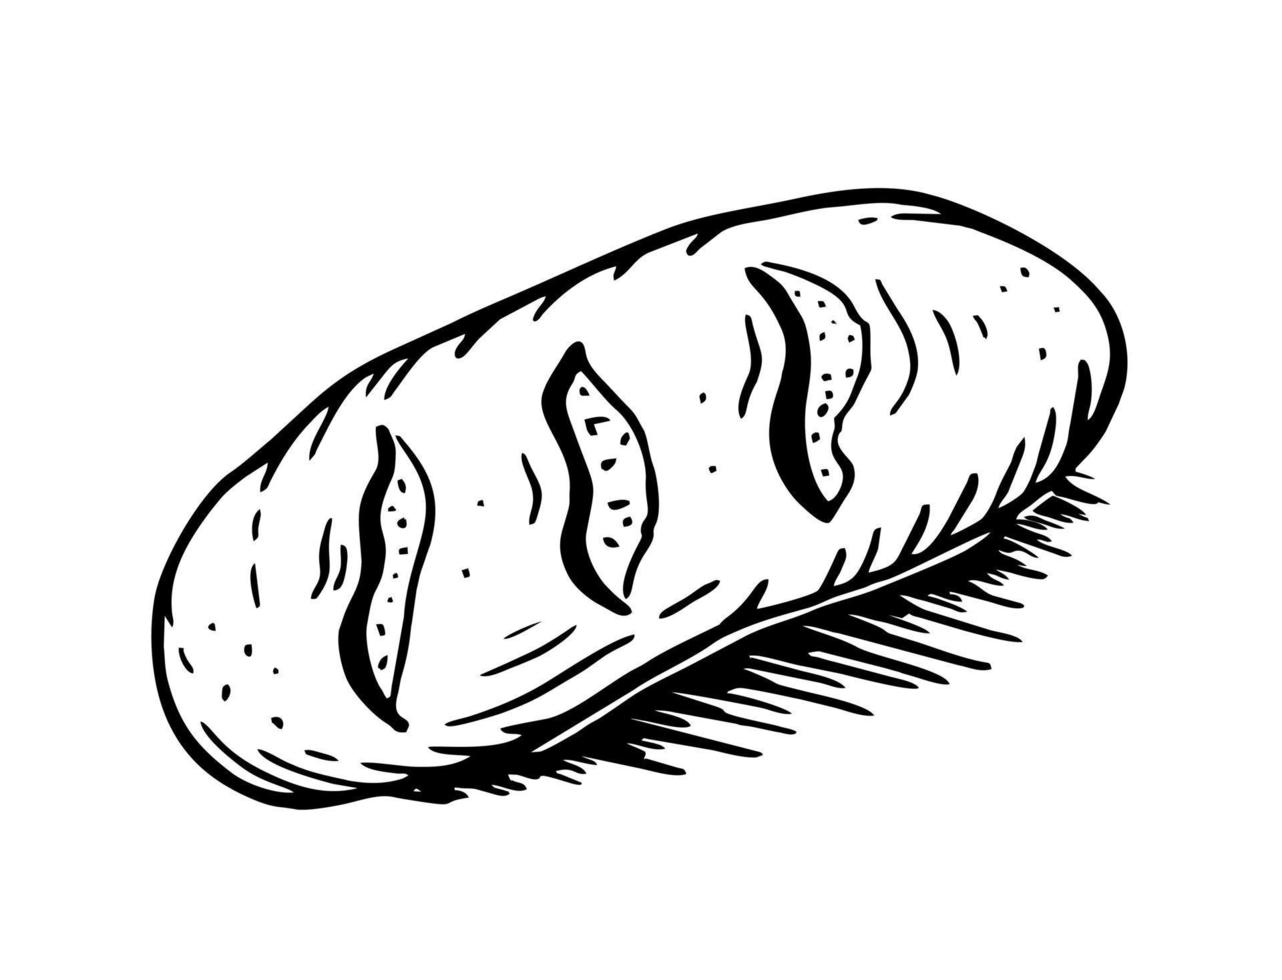 Baguette ist ein handgezeichneter Bäckereielementvektor im Stil einer Doodle-Skizze. für Café- und Bäckereimenüs vektor